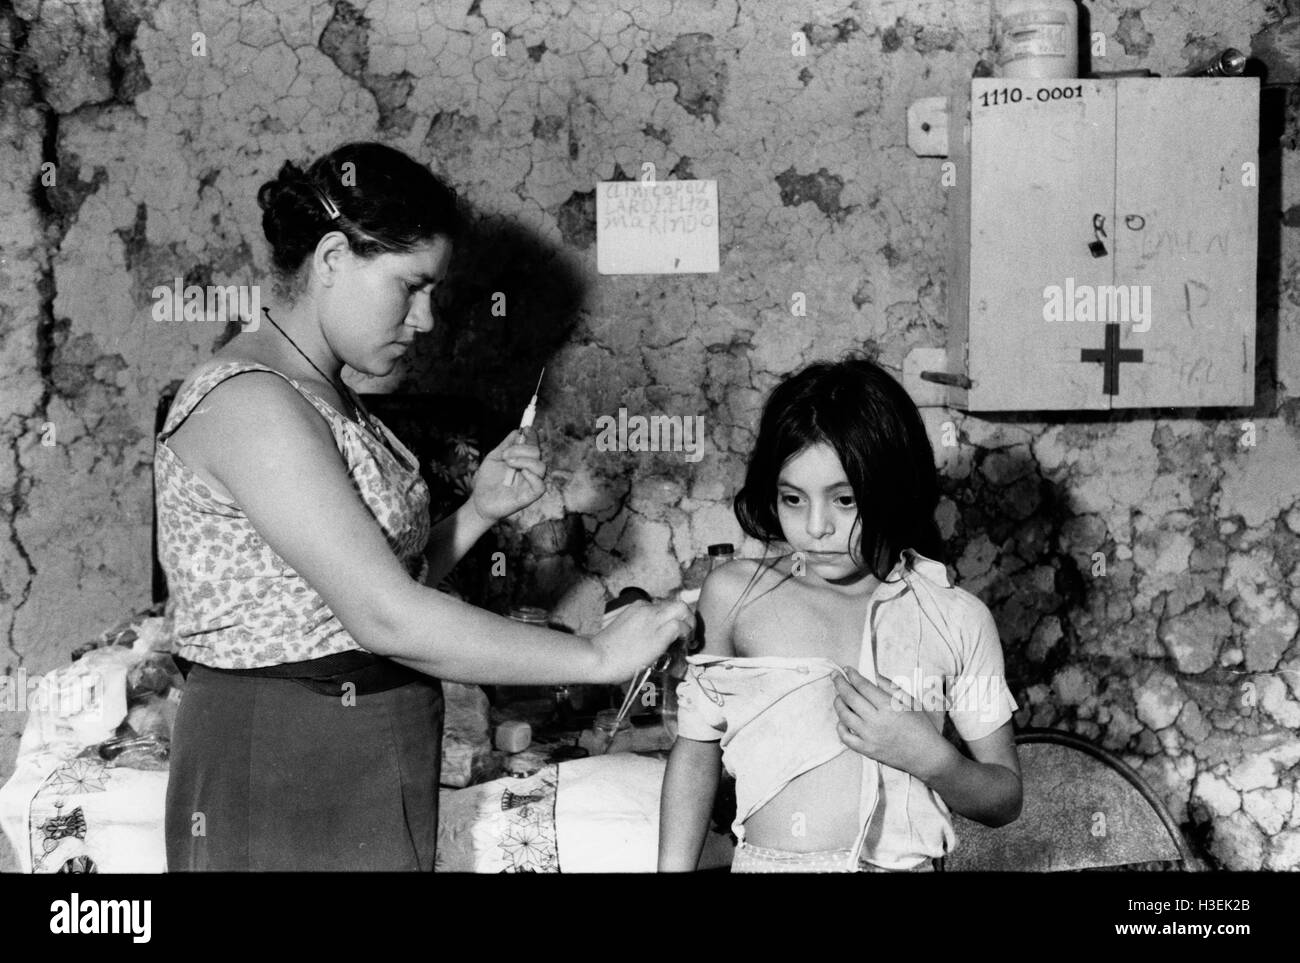 EL SALVADOR, GUAZAPA, mars 1984 : Un paramédic formé d'un enfant donne une inoculation. Banque D'Images